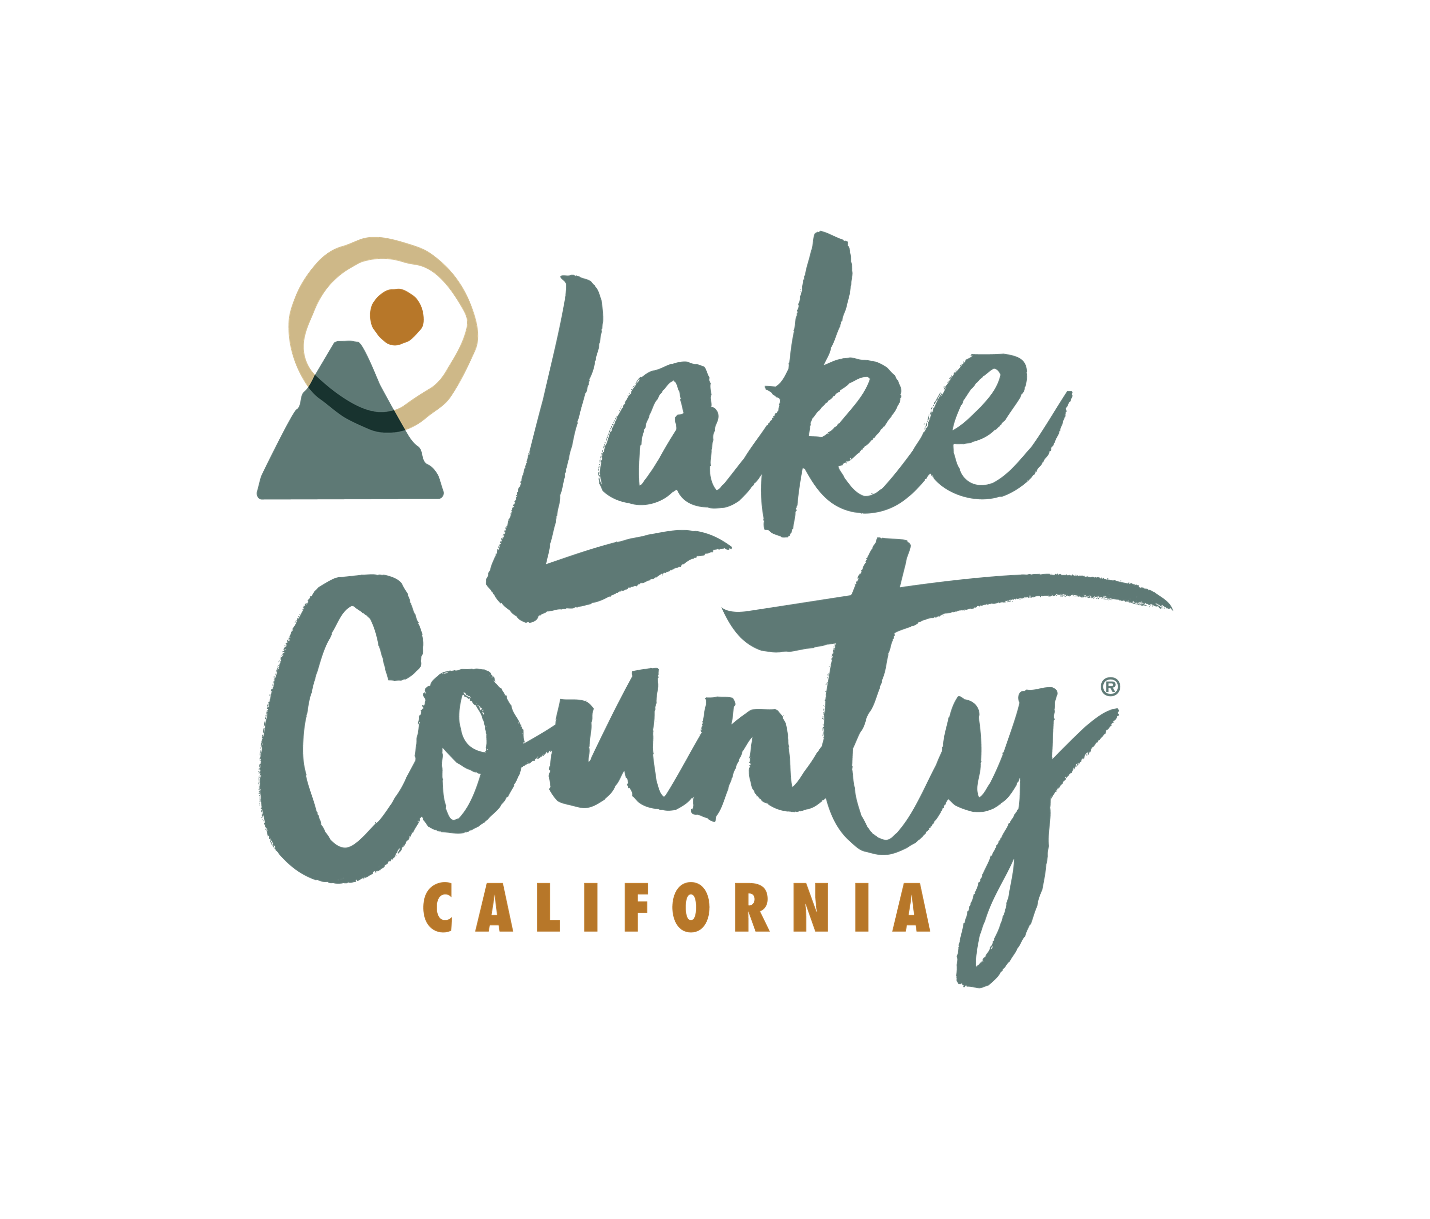 Visit Lake County